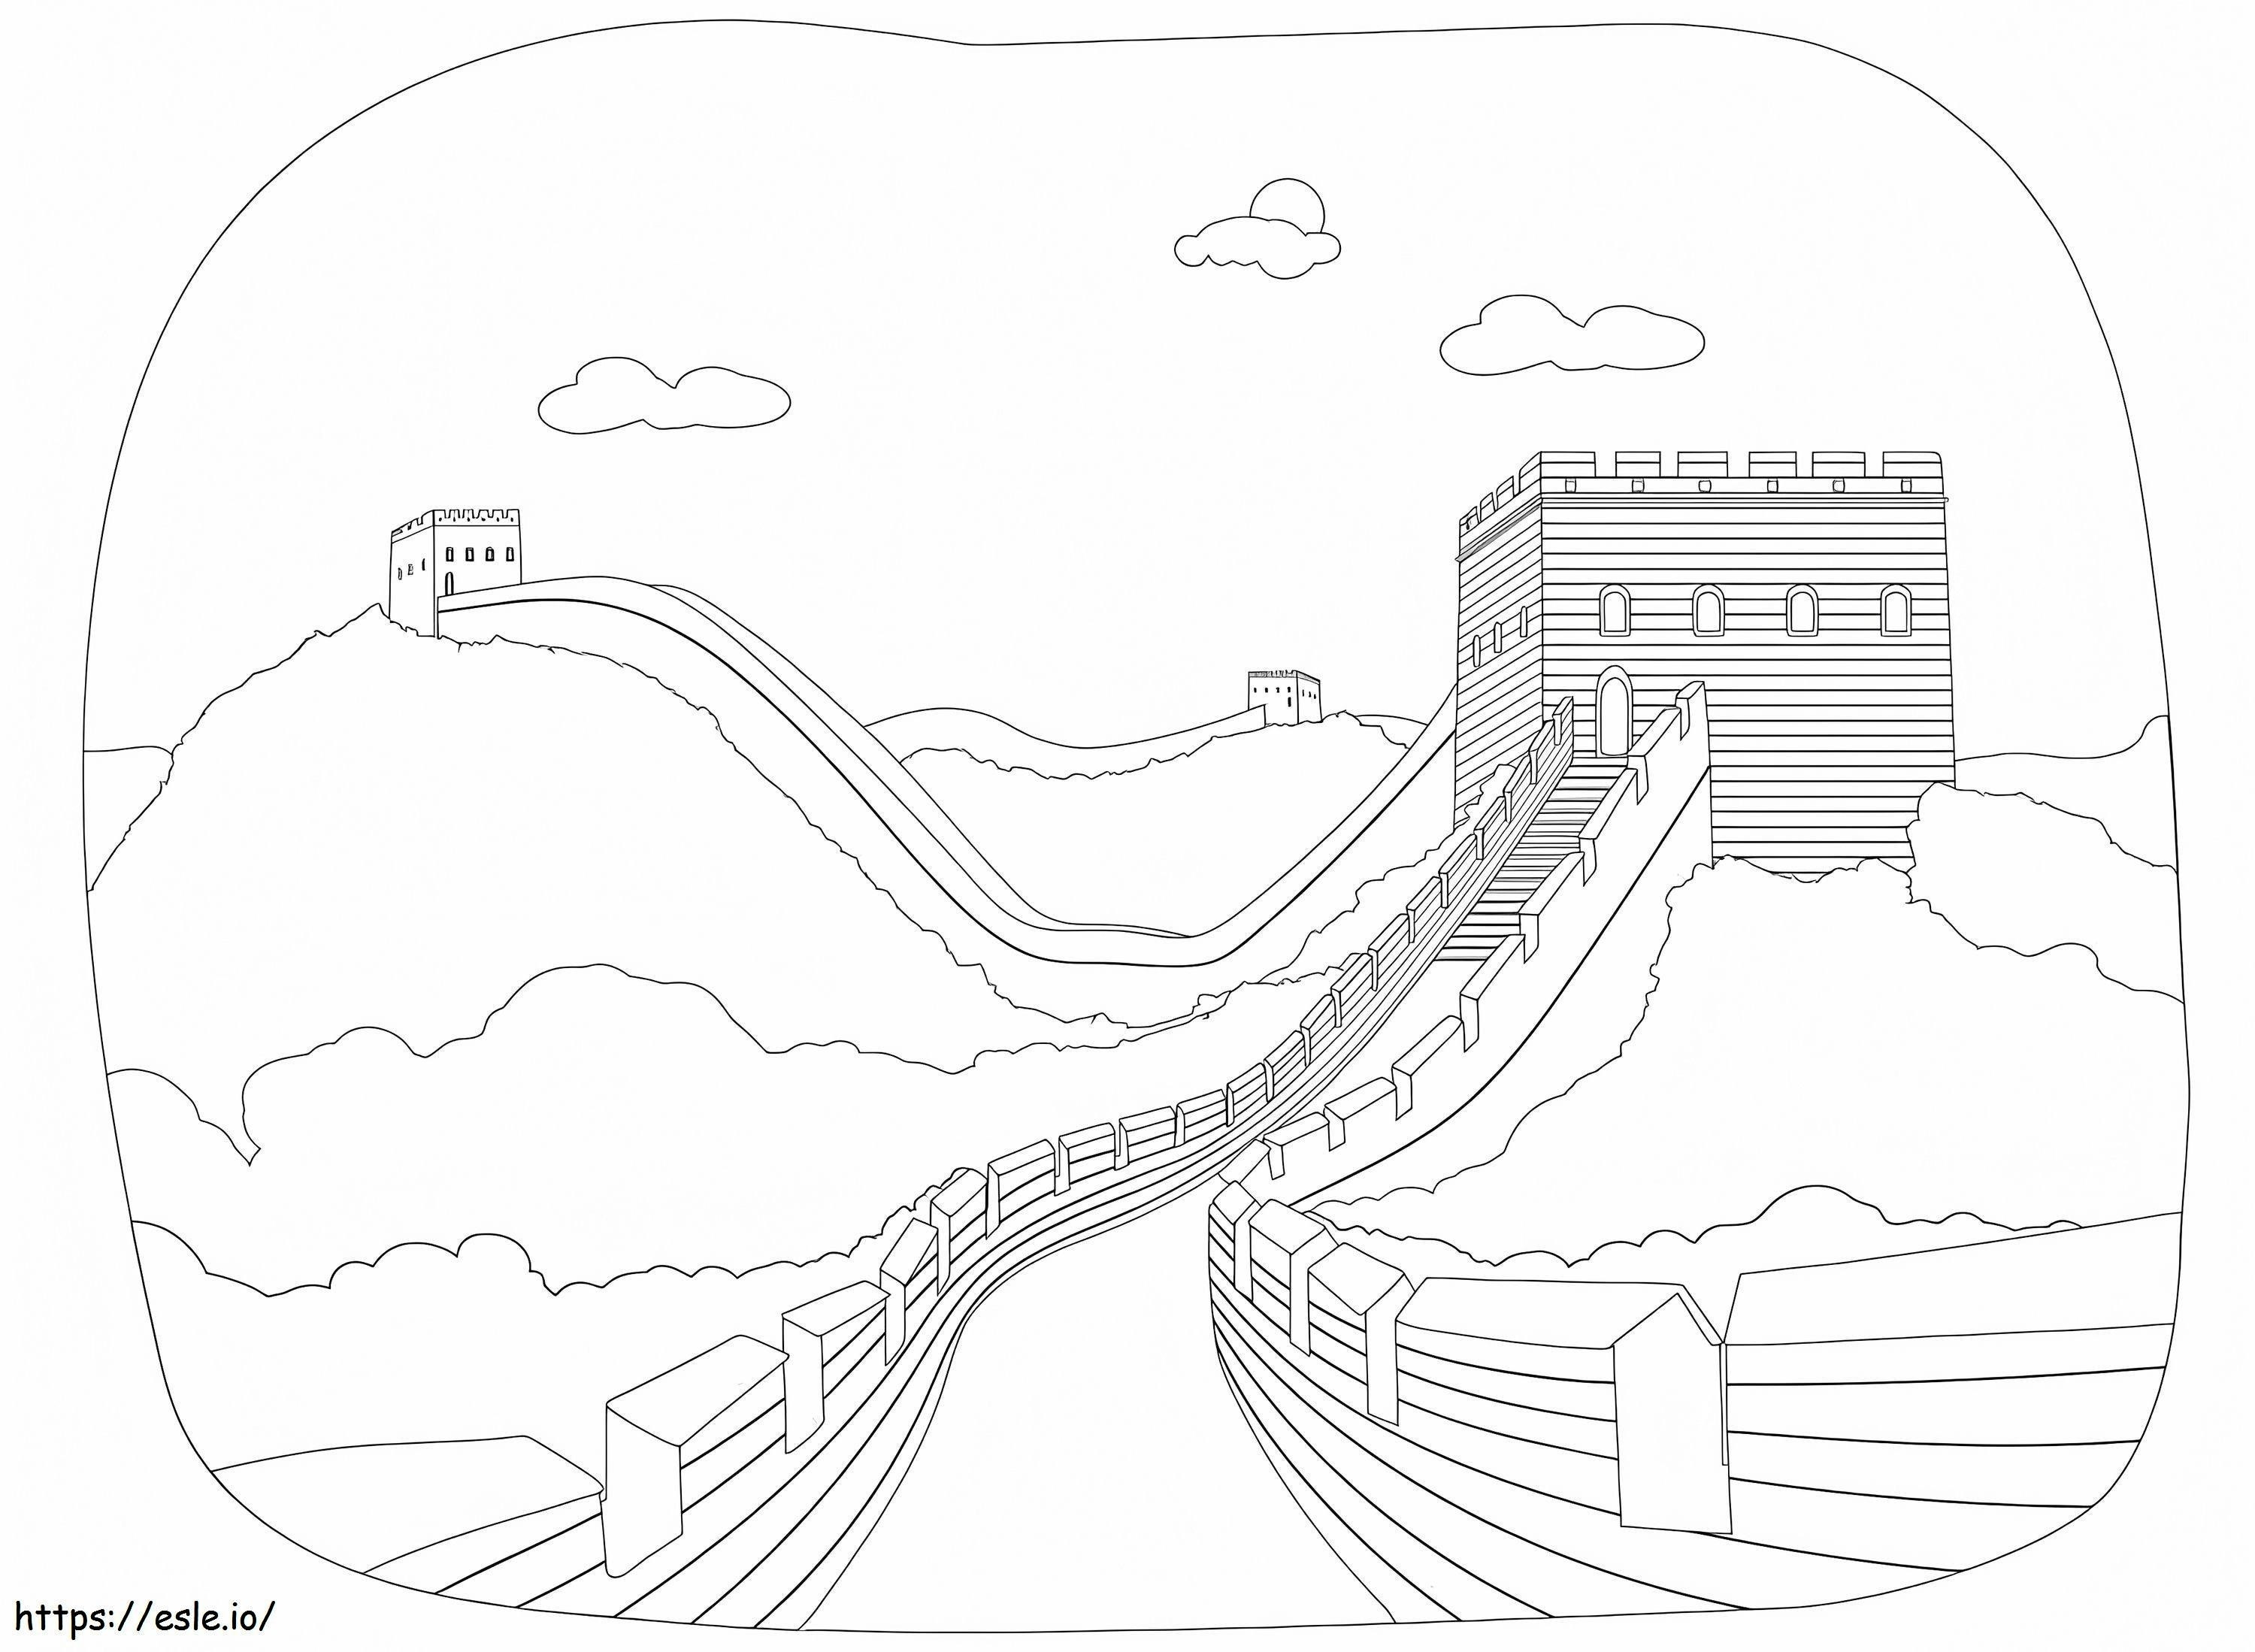 Chinesische Mauer 3 ausmalbilder